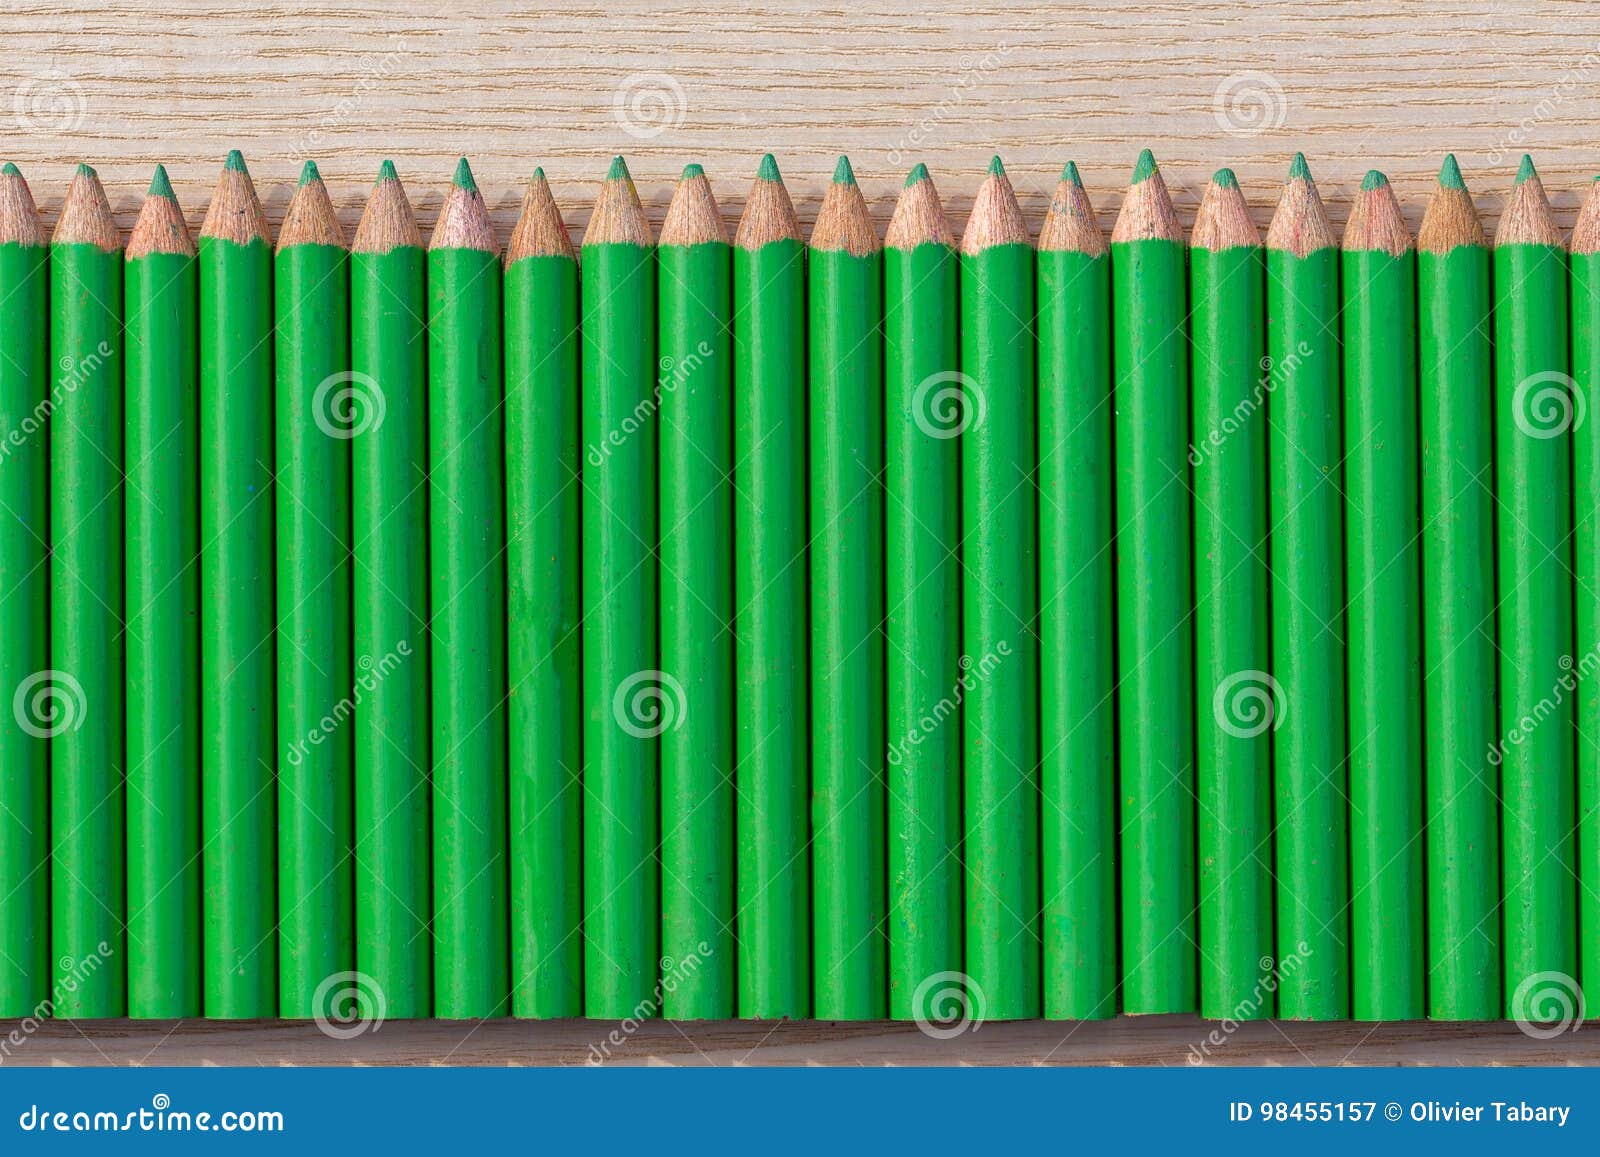 Купить зеленый карандаш. Зеленый карандаш. Карандаш зеленого цвета. Карандаши зеленый для занятия. Карандаш на зеленом фоне.